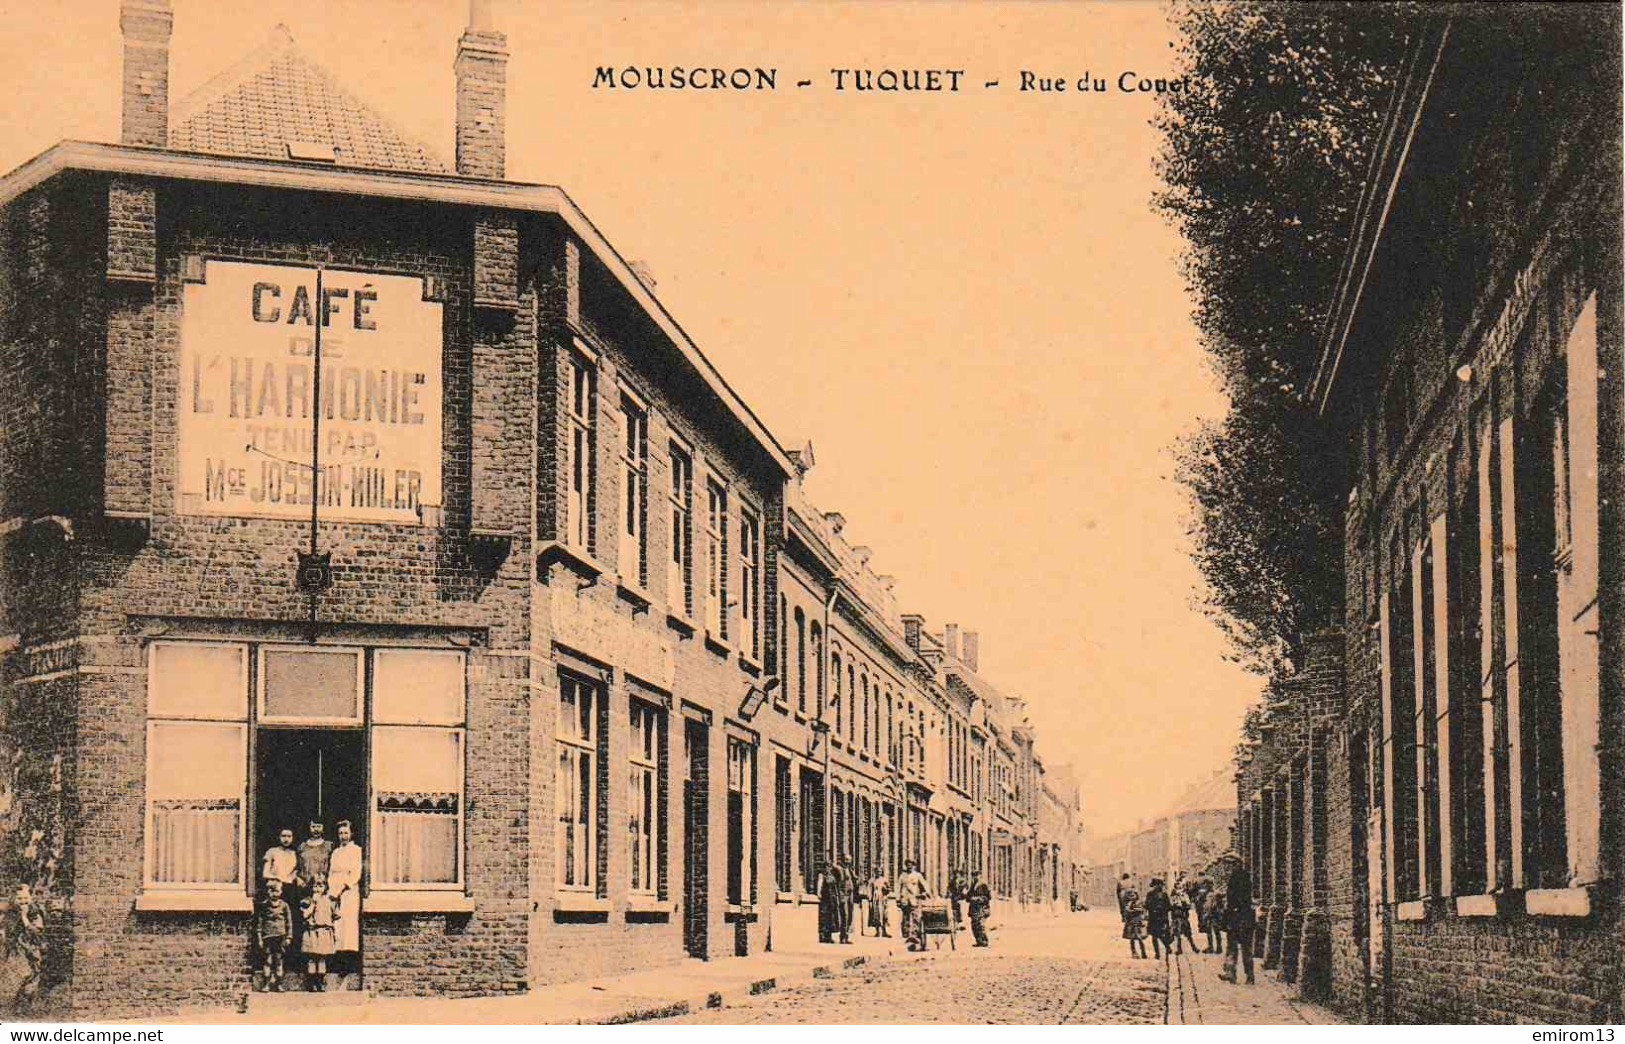 Mouscron Tuquet Rue Du Couet Café De L’Harmonie - Mouscron - Moeskroen